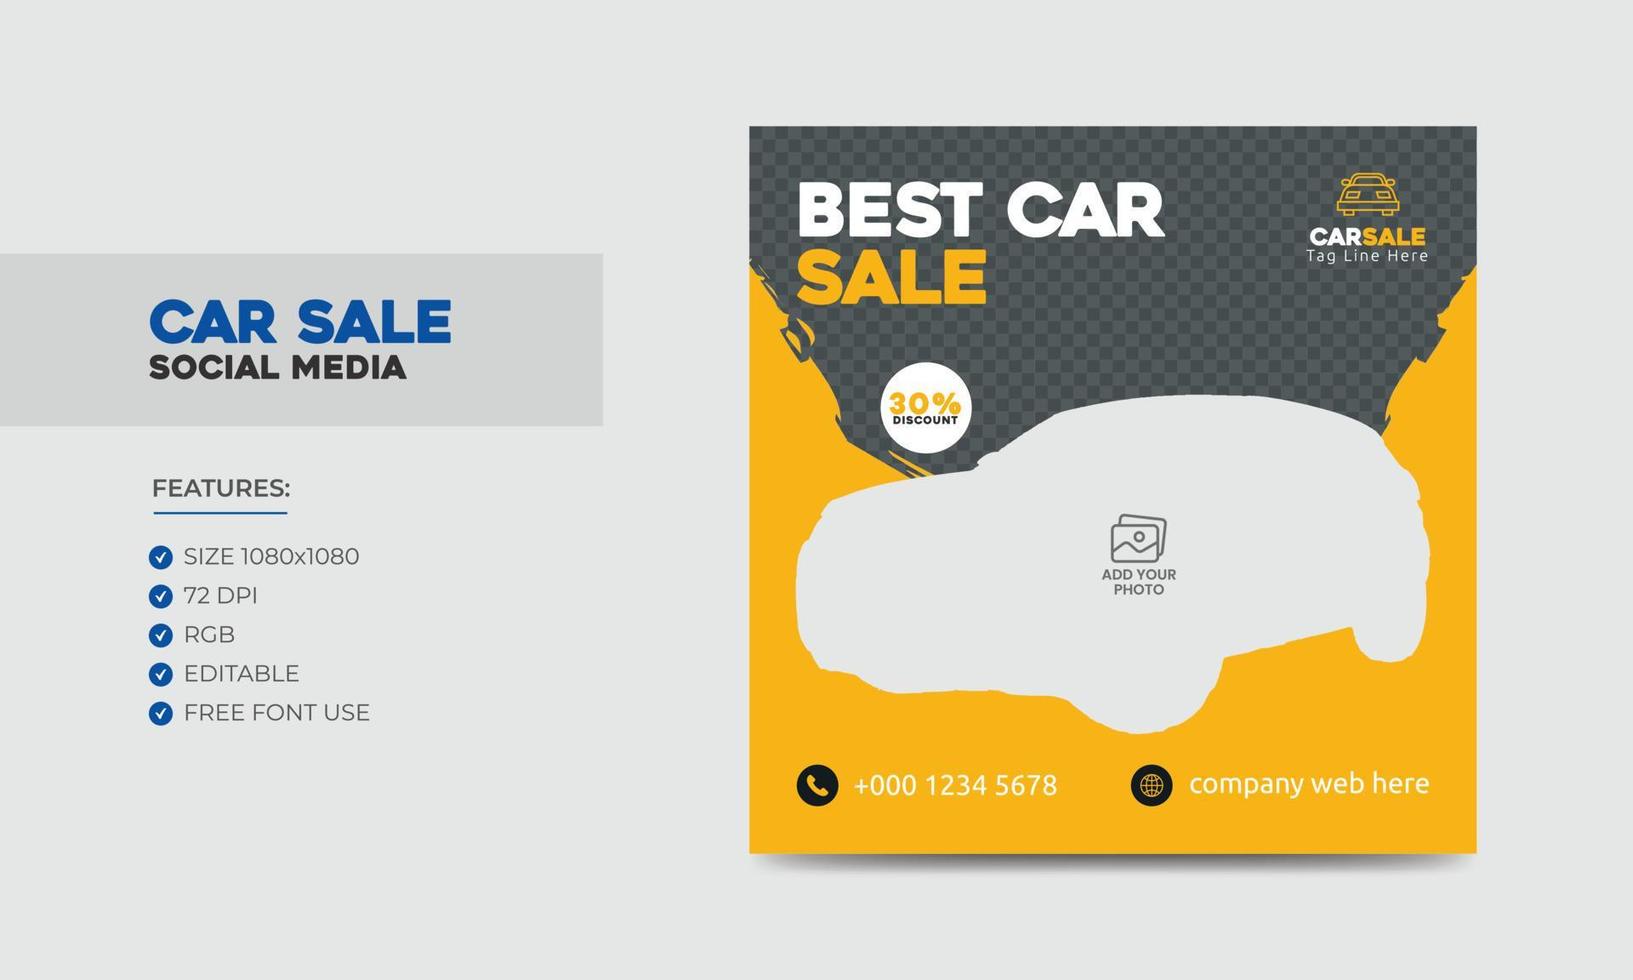 Car Sale Promotion Social Media Post Banner Design Template. Car Rental Service Social Media Ads Banner vector